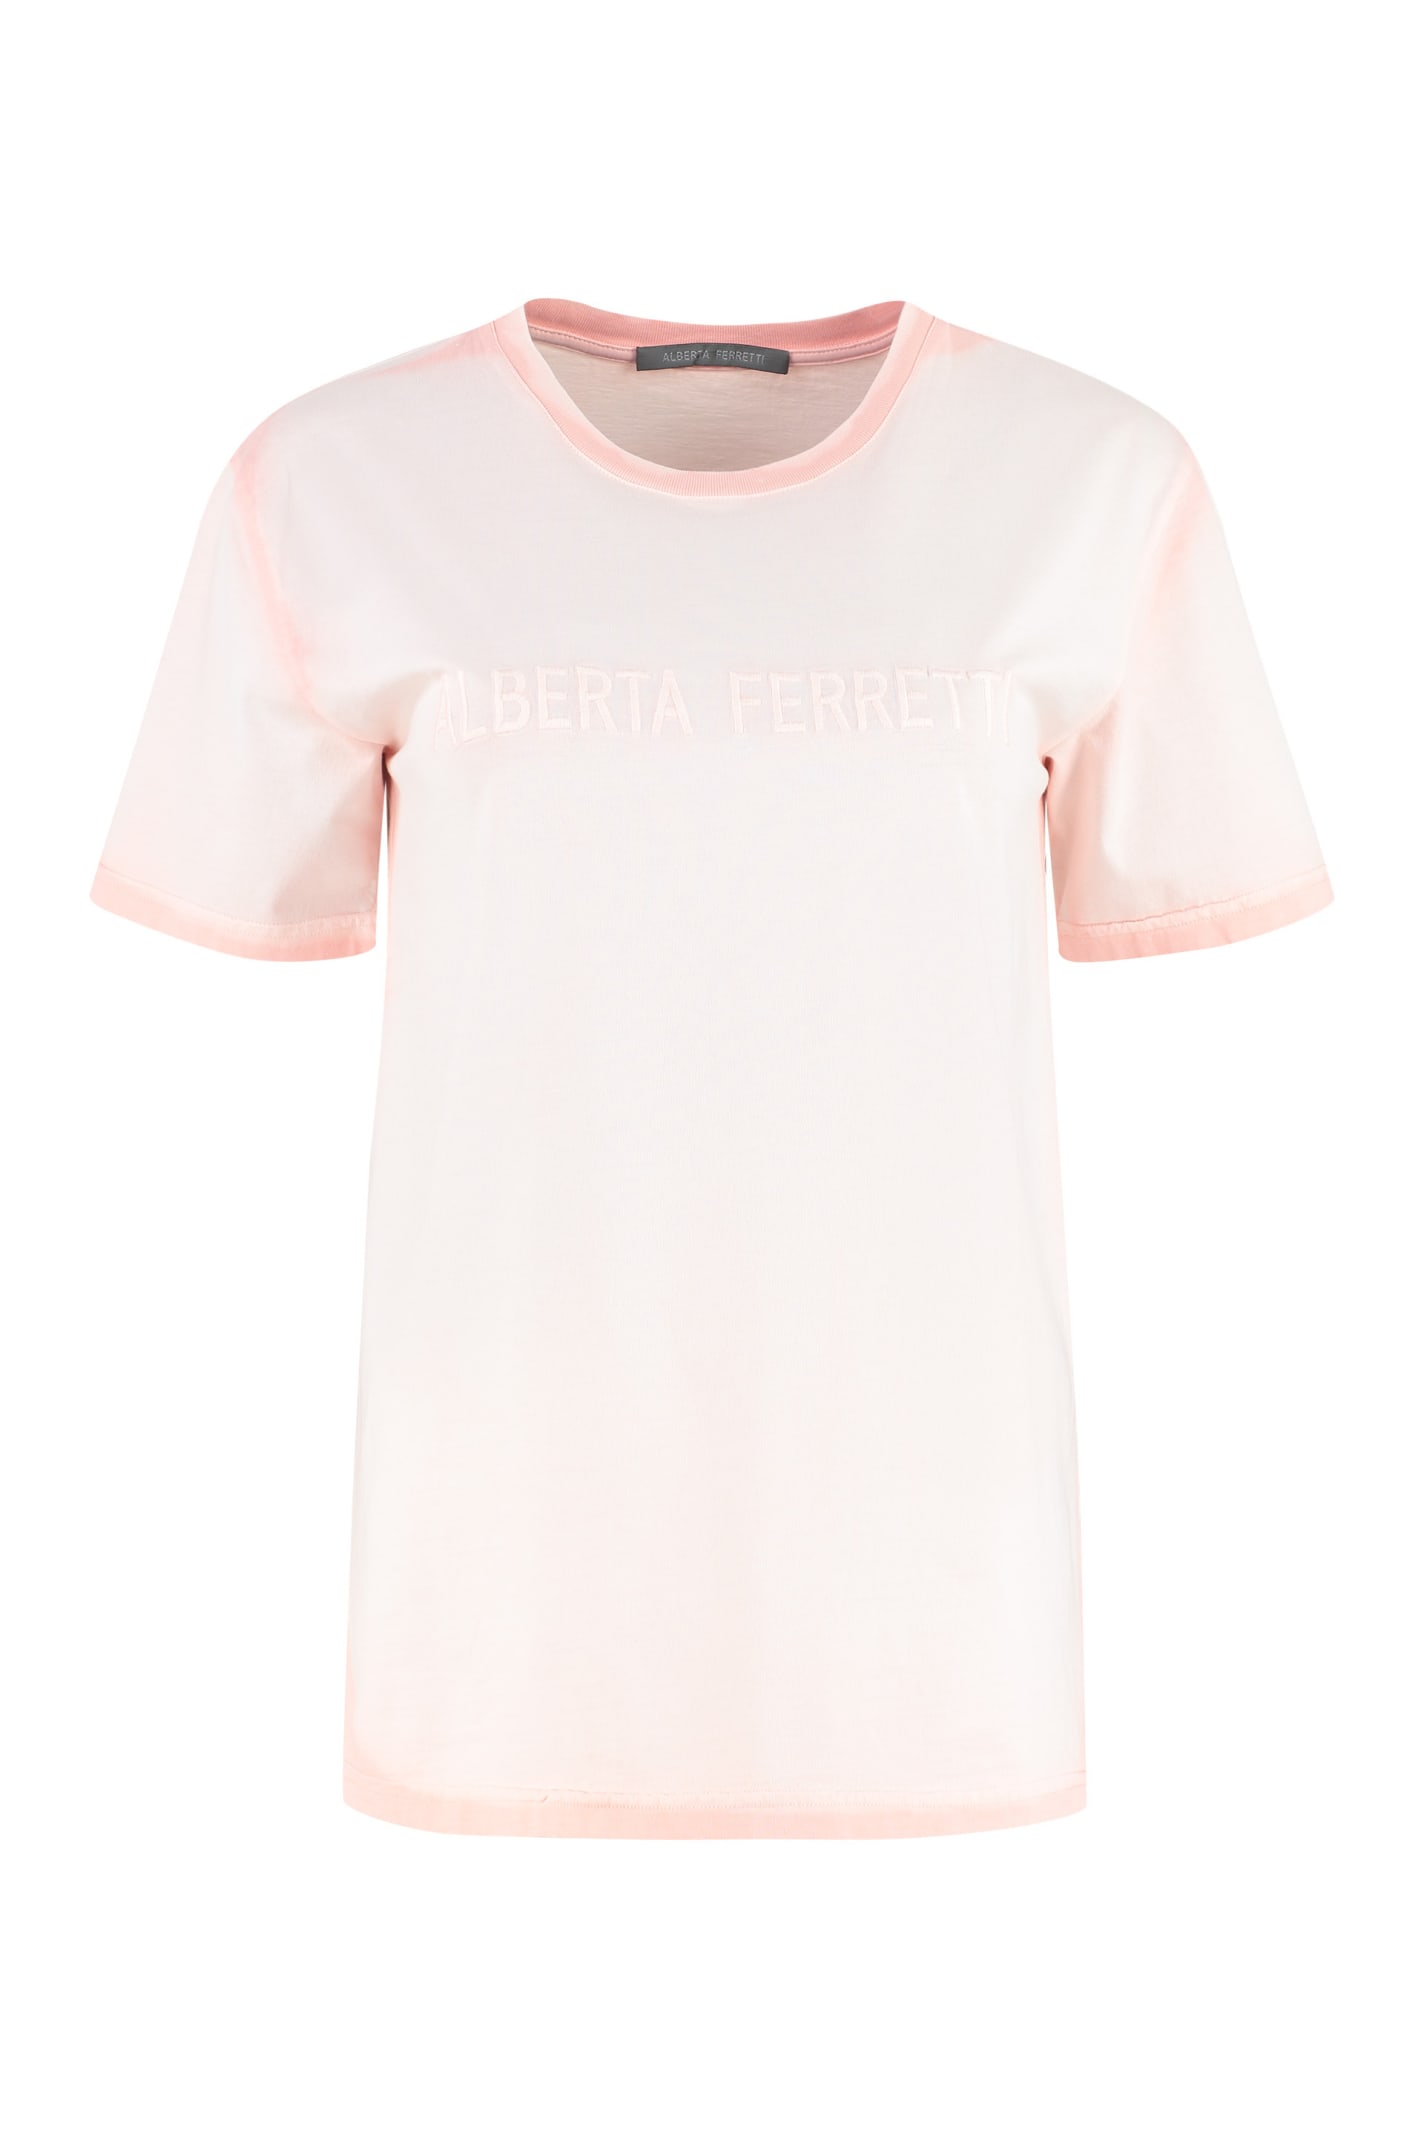 Alberta Ferretti Cotton Crew-neck T-shirt In Pink